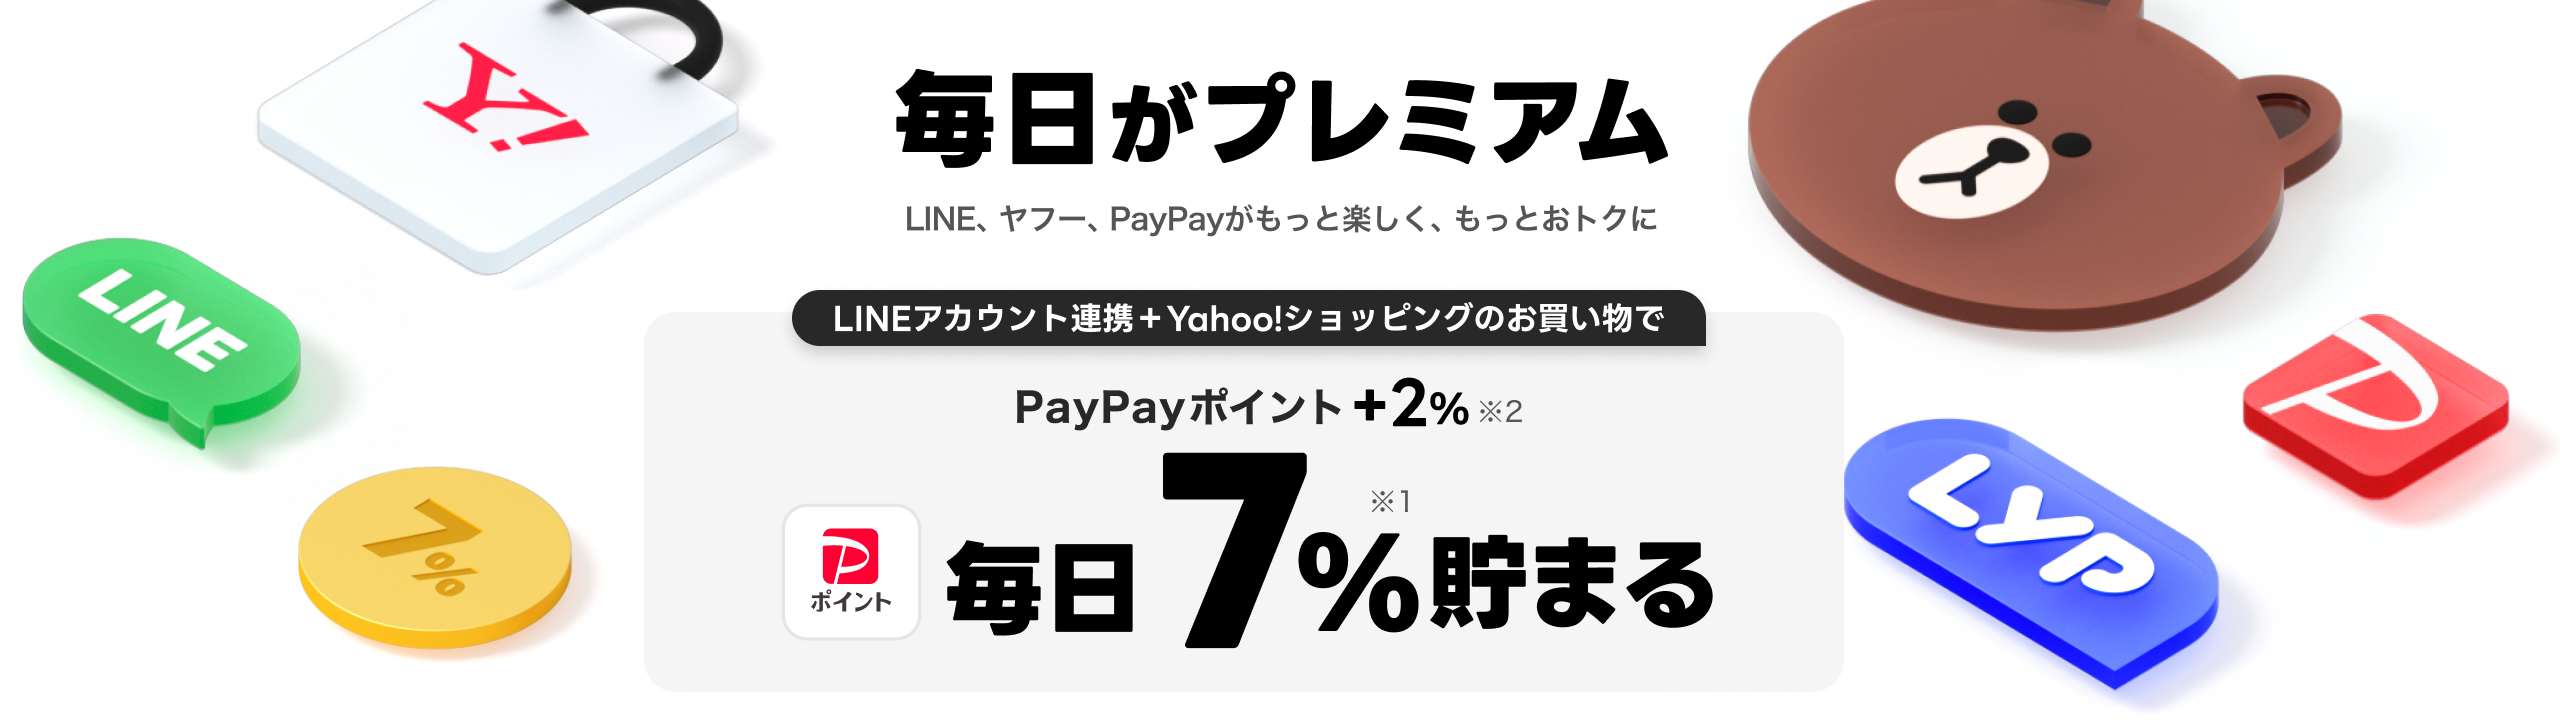 LYPプレミアムに登録するとYahoo!ショッピングのお買い物でPayPayポイント+2% 毎日7%貯まる